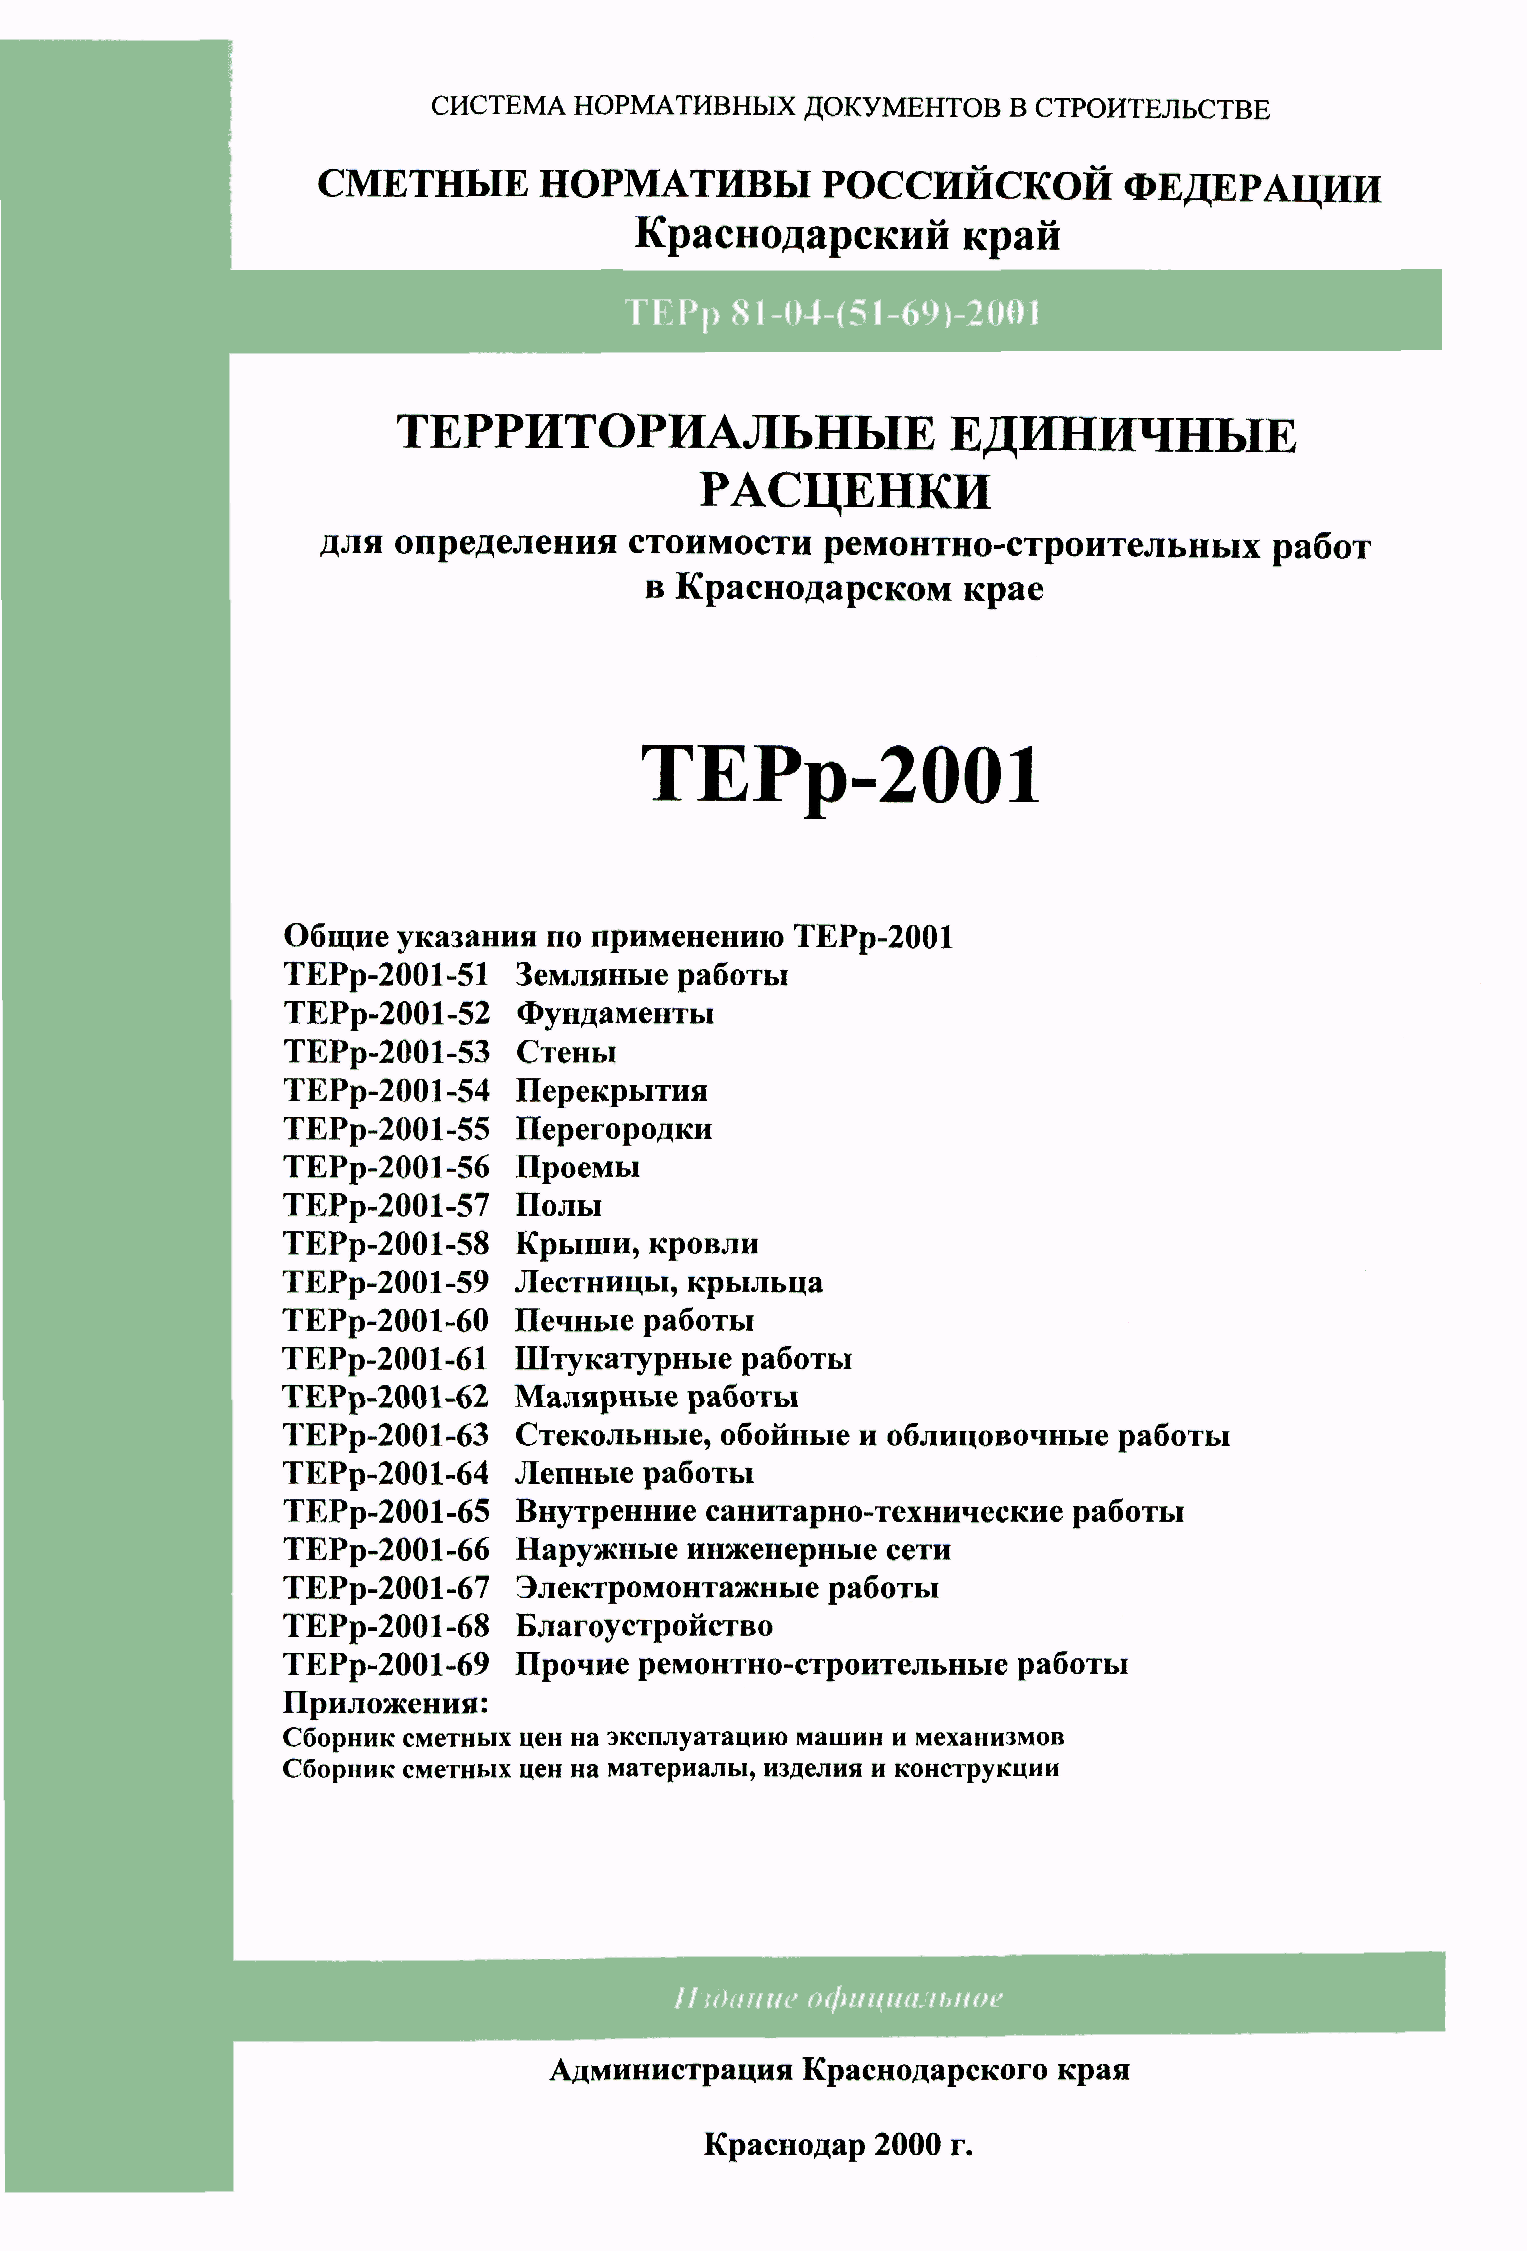 ТЕРр Краснодарского края 2001-58